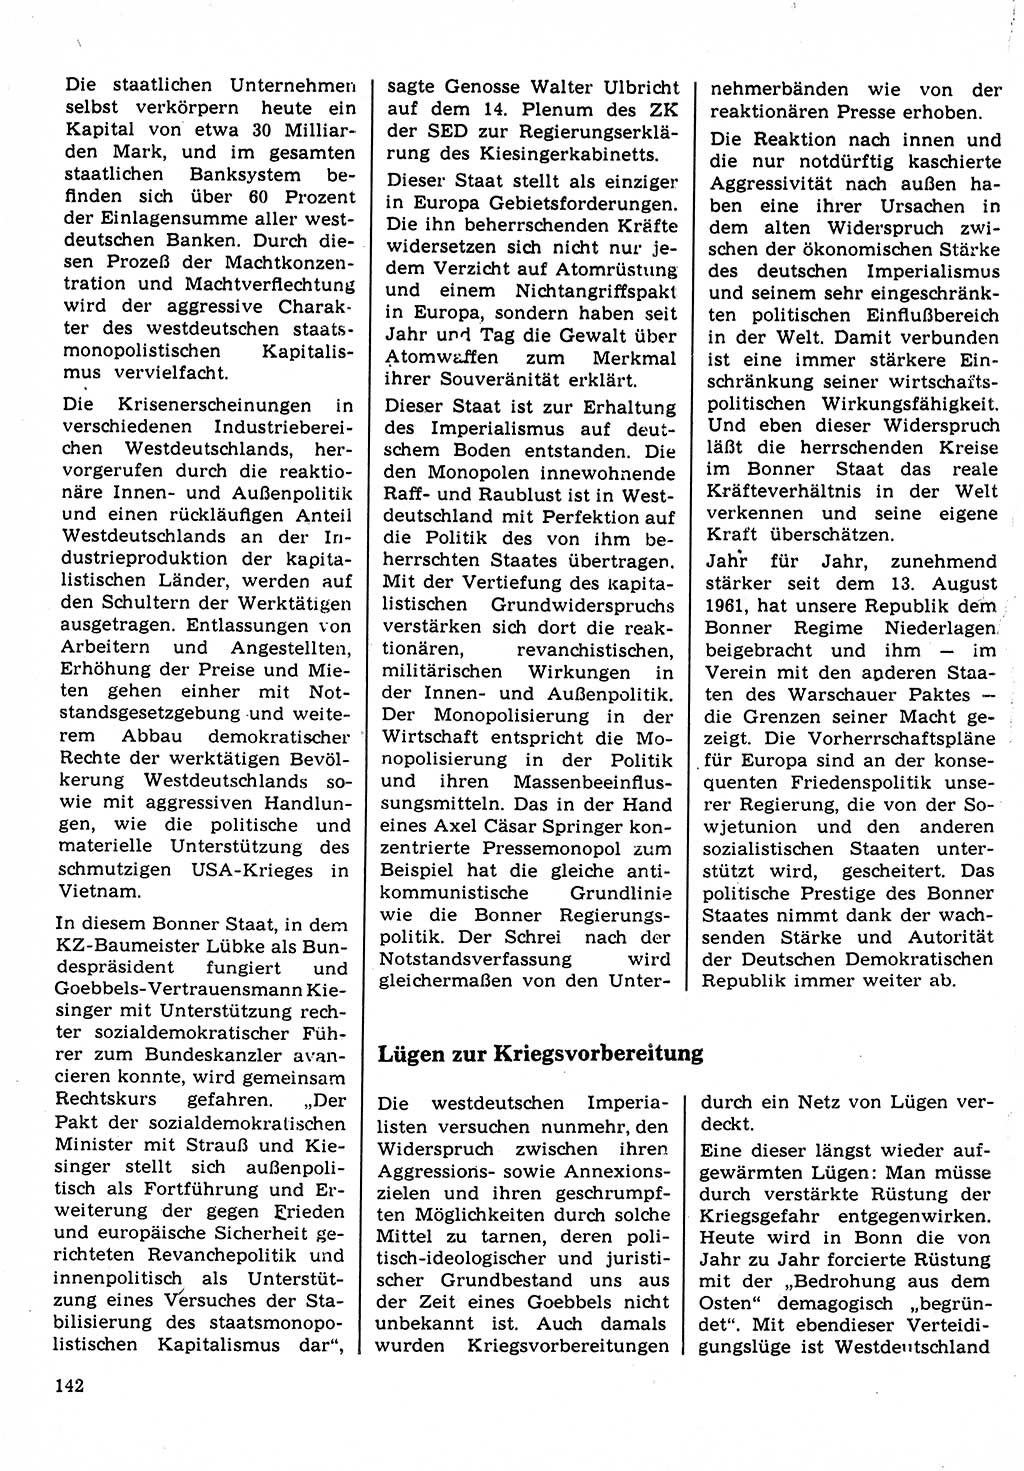 Neuer Weg (NW), Organ des Zentralkomitees (ZK) der SED (Sozialistische Einheitspartei Deutschlands) für Fragen des Parteilebens, 22. Jahrgang [Deutsche Demokratische Republik (DDR)] 1967, Seite 142 (NW ZK SED DDR 1967, S. 142)